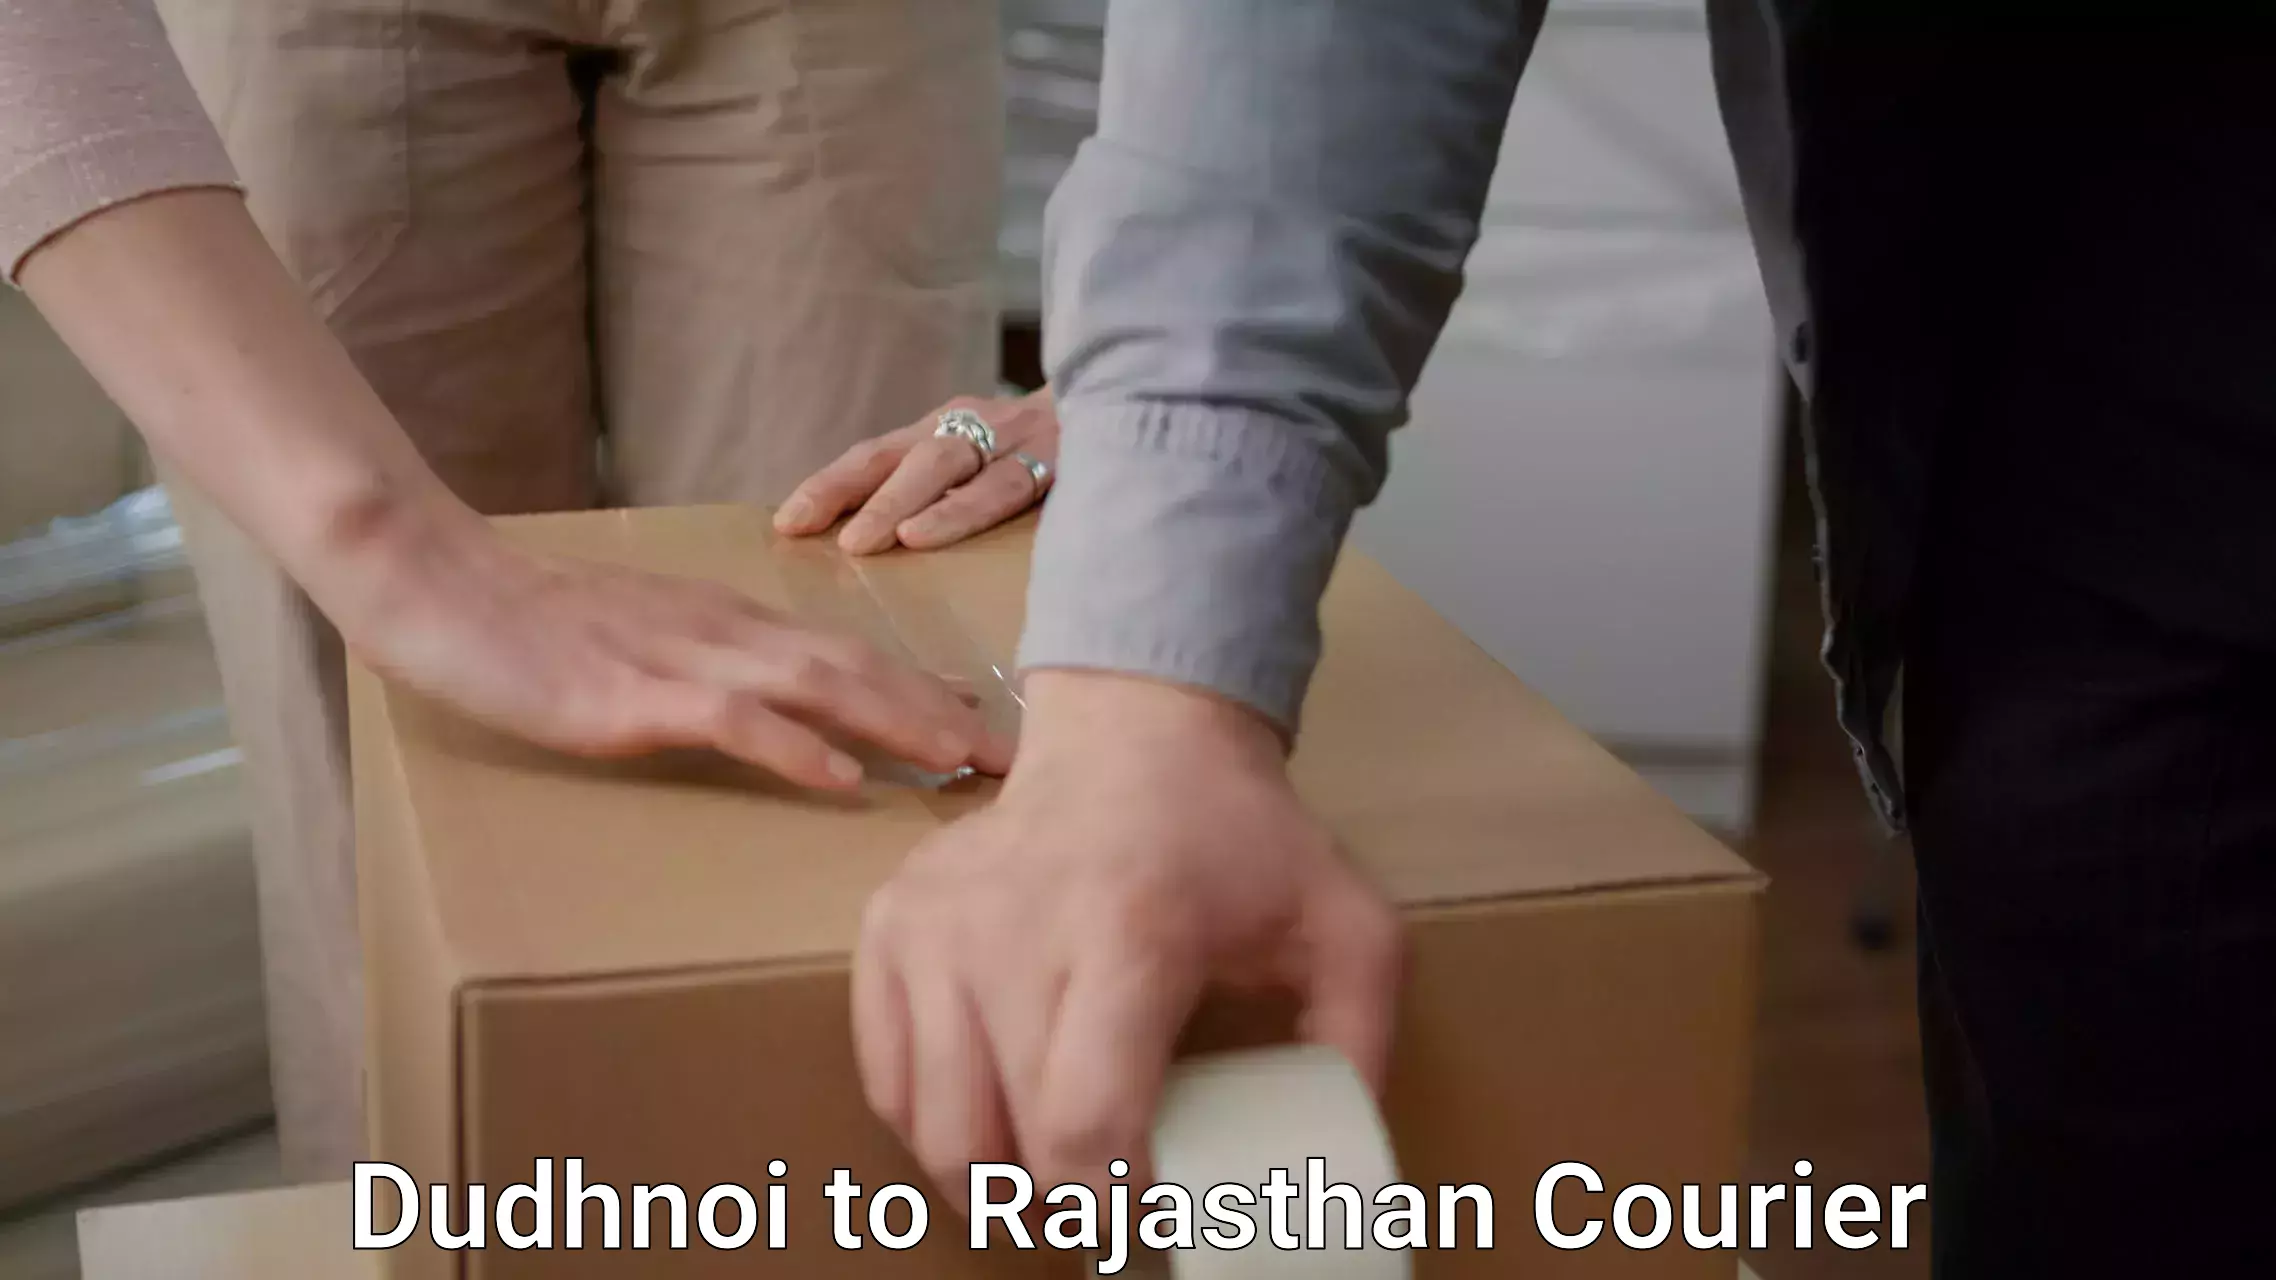 Furniture moving plans Dudhnoi to Rajgarh Rajasthan